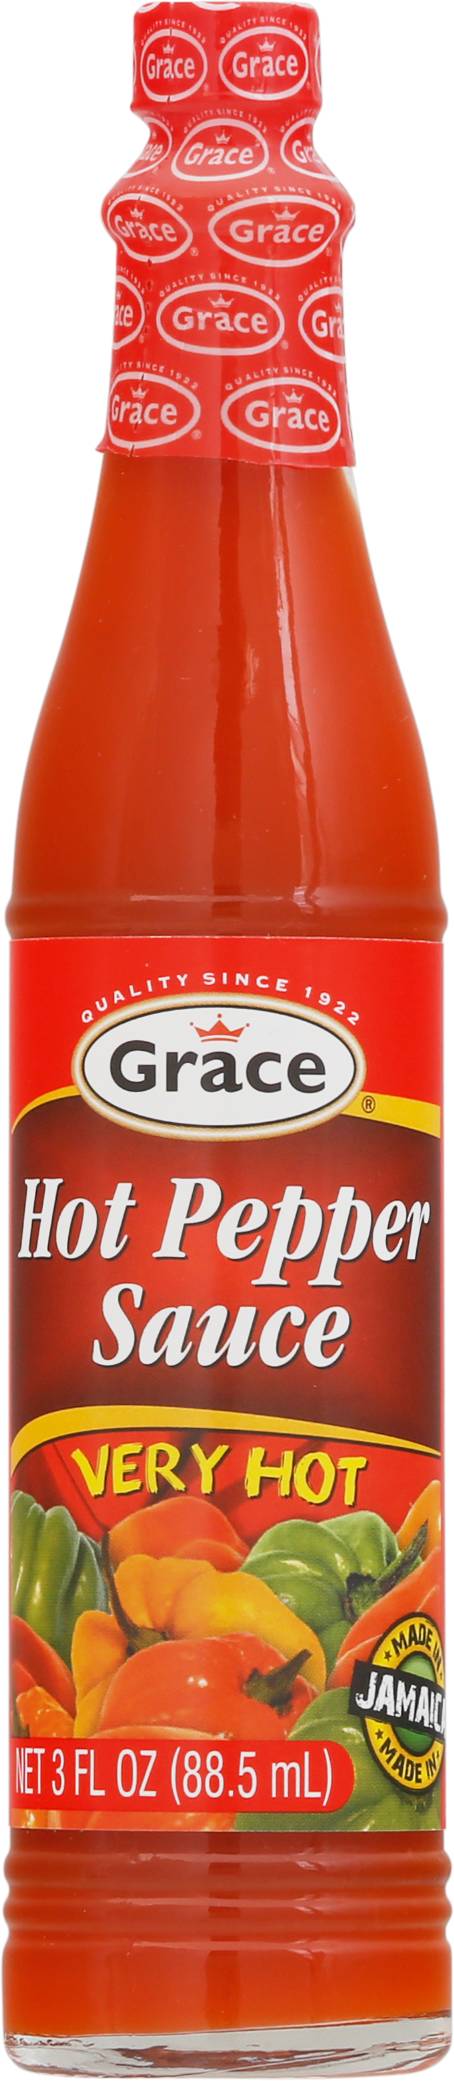 Grace Very Hot Pepper Sauce